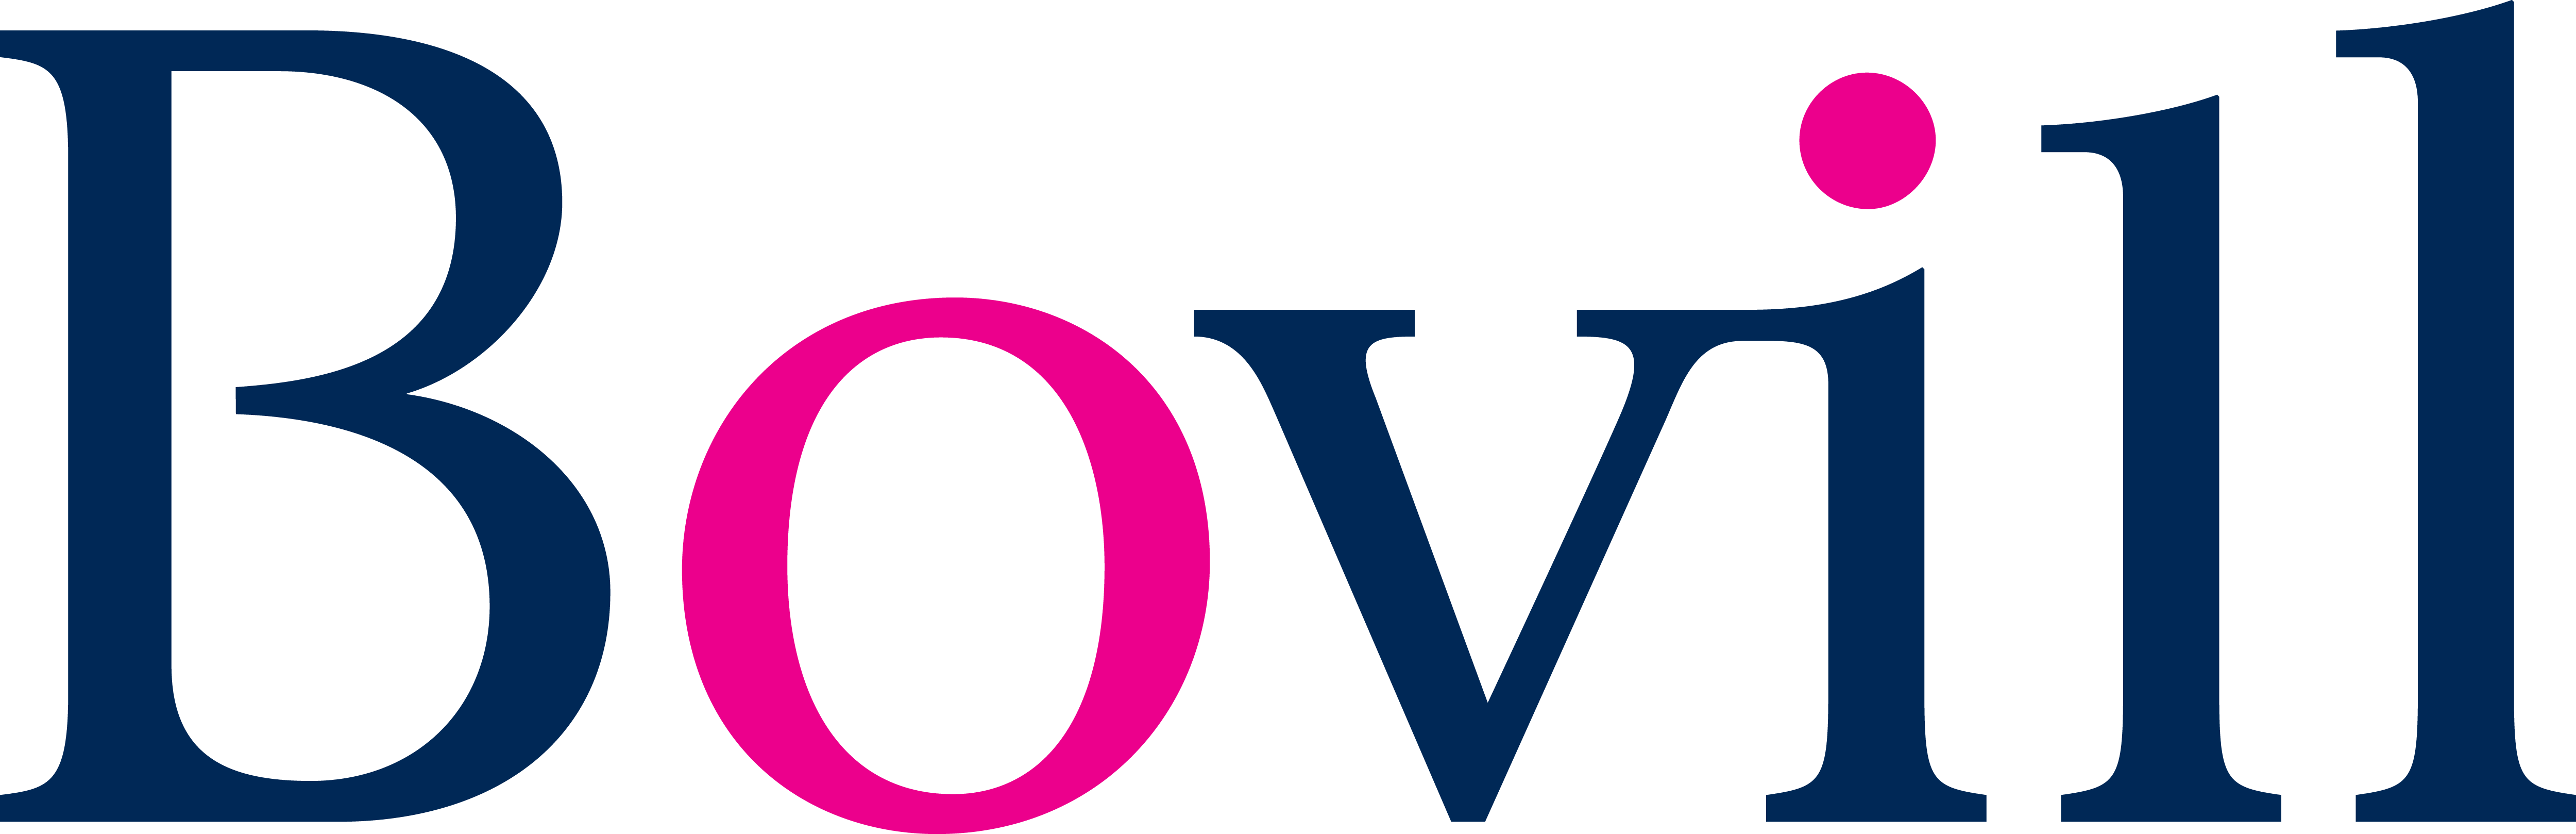 Bovill logo